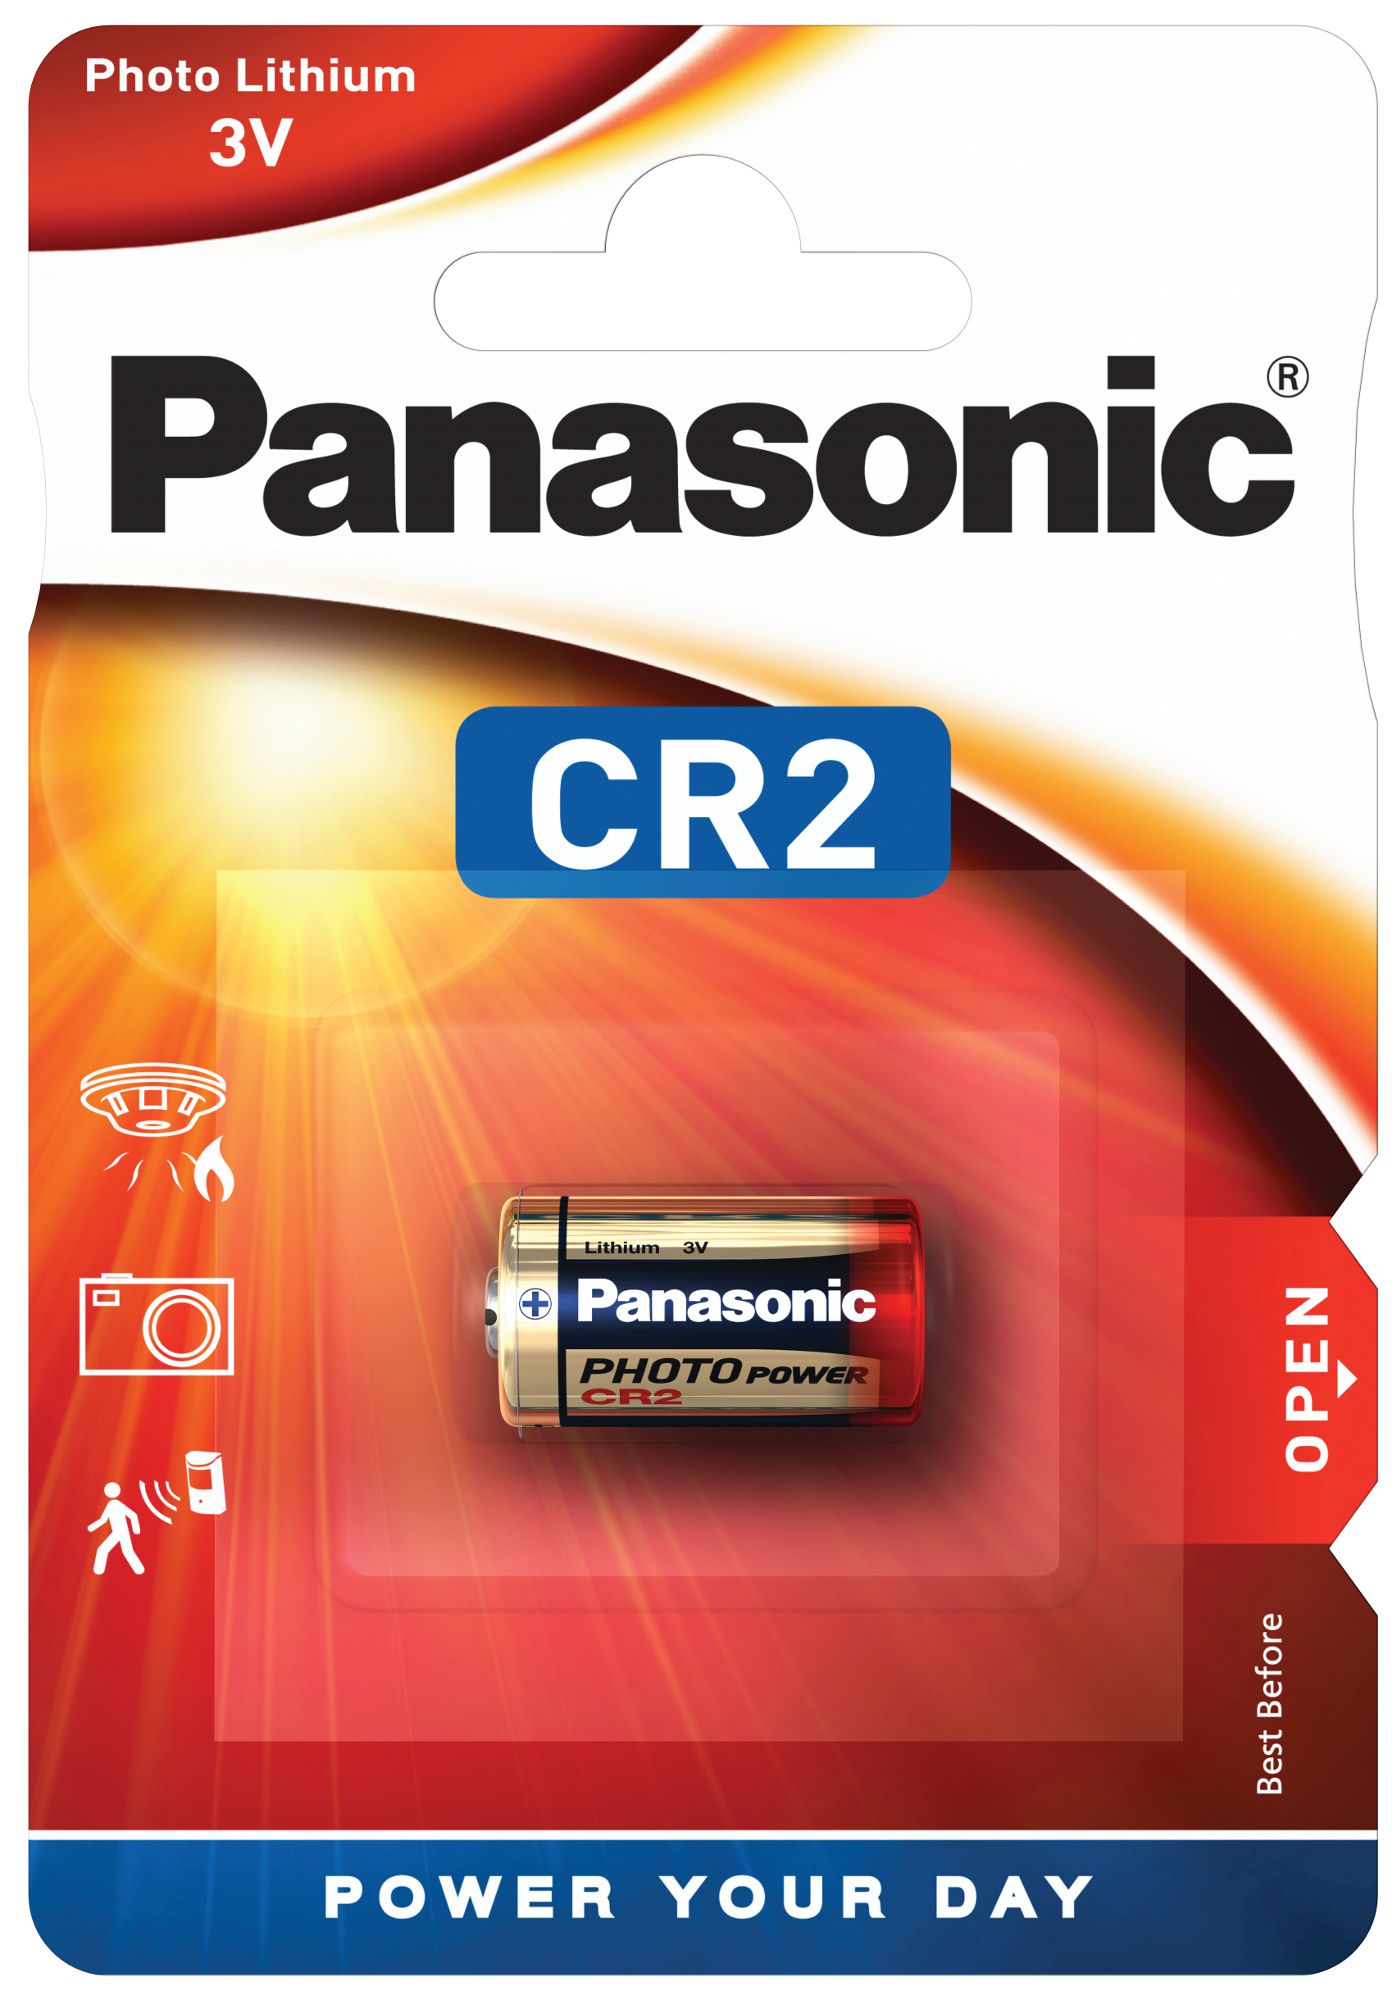 Panasonic CR2 3V Photo Power Lithium Batterie (1er Blister)  